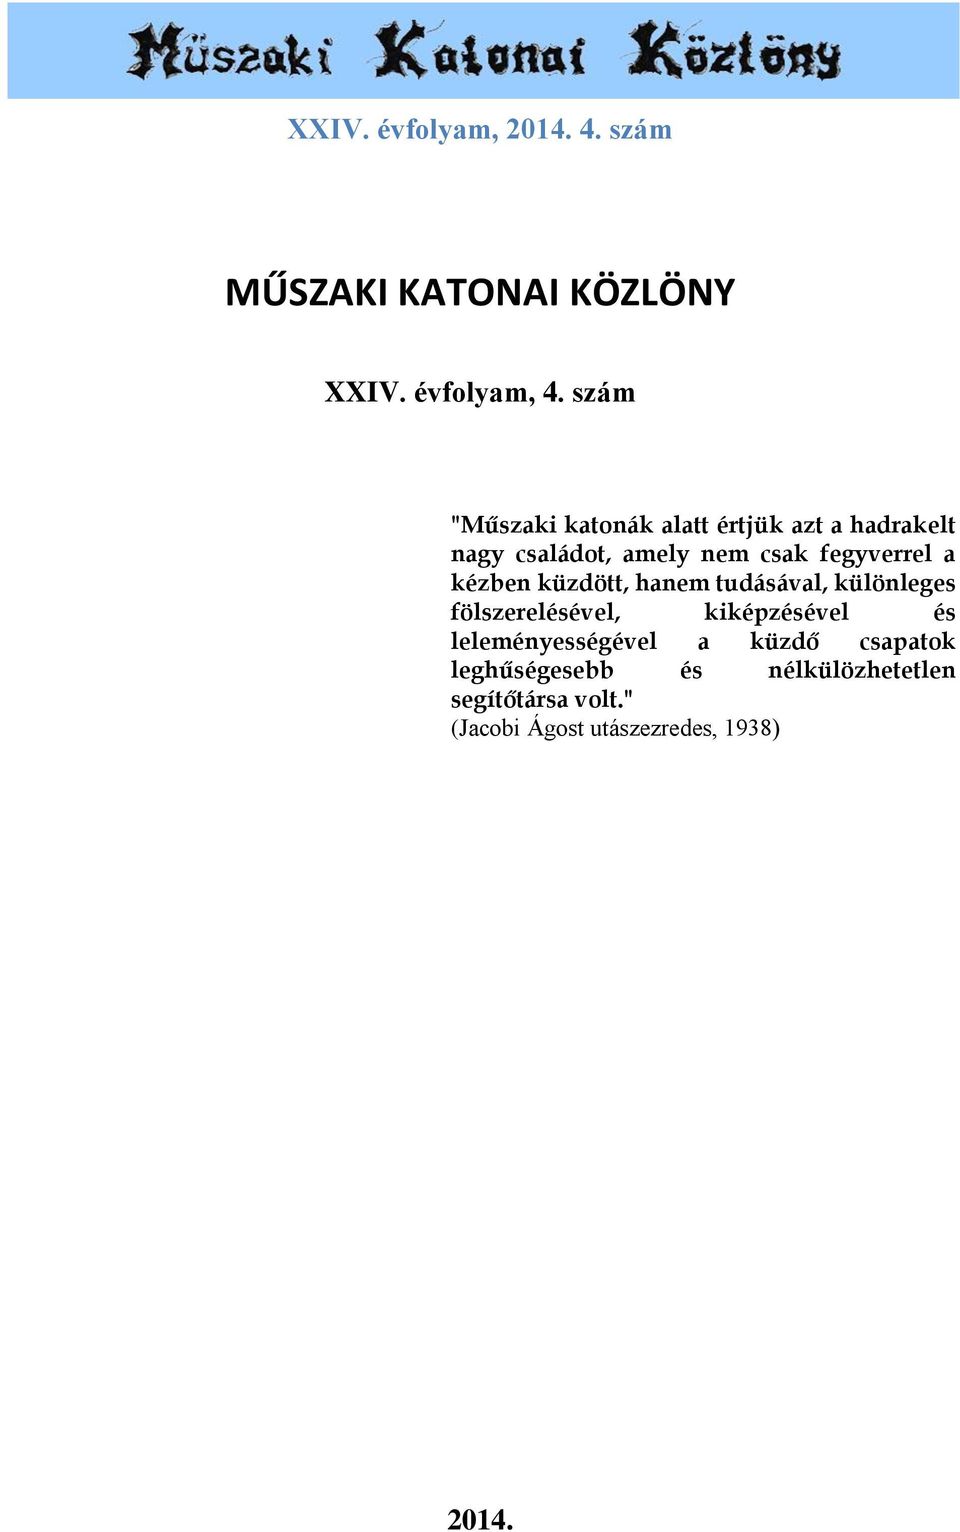 MŰSZAKI KATONAI KÖZLÖNY - PDF Ingyenes letöltés